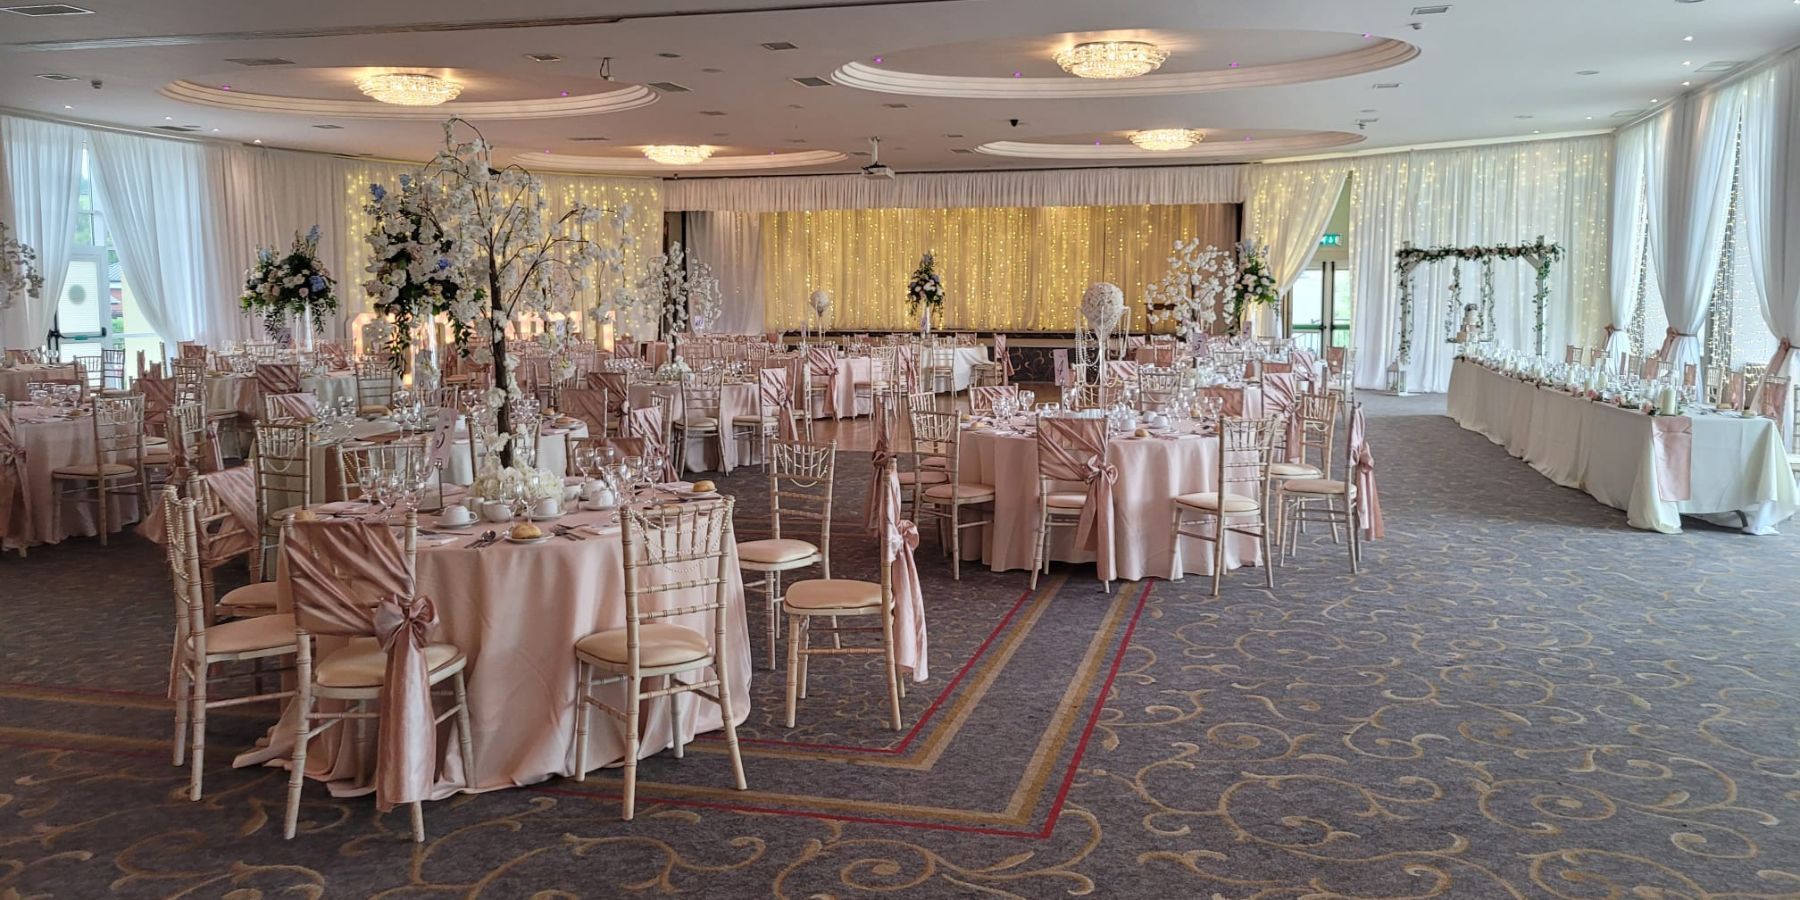 Der atemberaubende Lisfannon-Ballsaal, der von Ultimate Weddings für die Hochzeit von Peter und Rochelle am 9. Juli 2022 ausgestattet wurde. Chivari-Stühle gepaart mit eleganten Drapierungen und romantischen Lichterketten, durchgehend in zartrosa und cremefarbenen Farben.